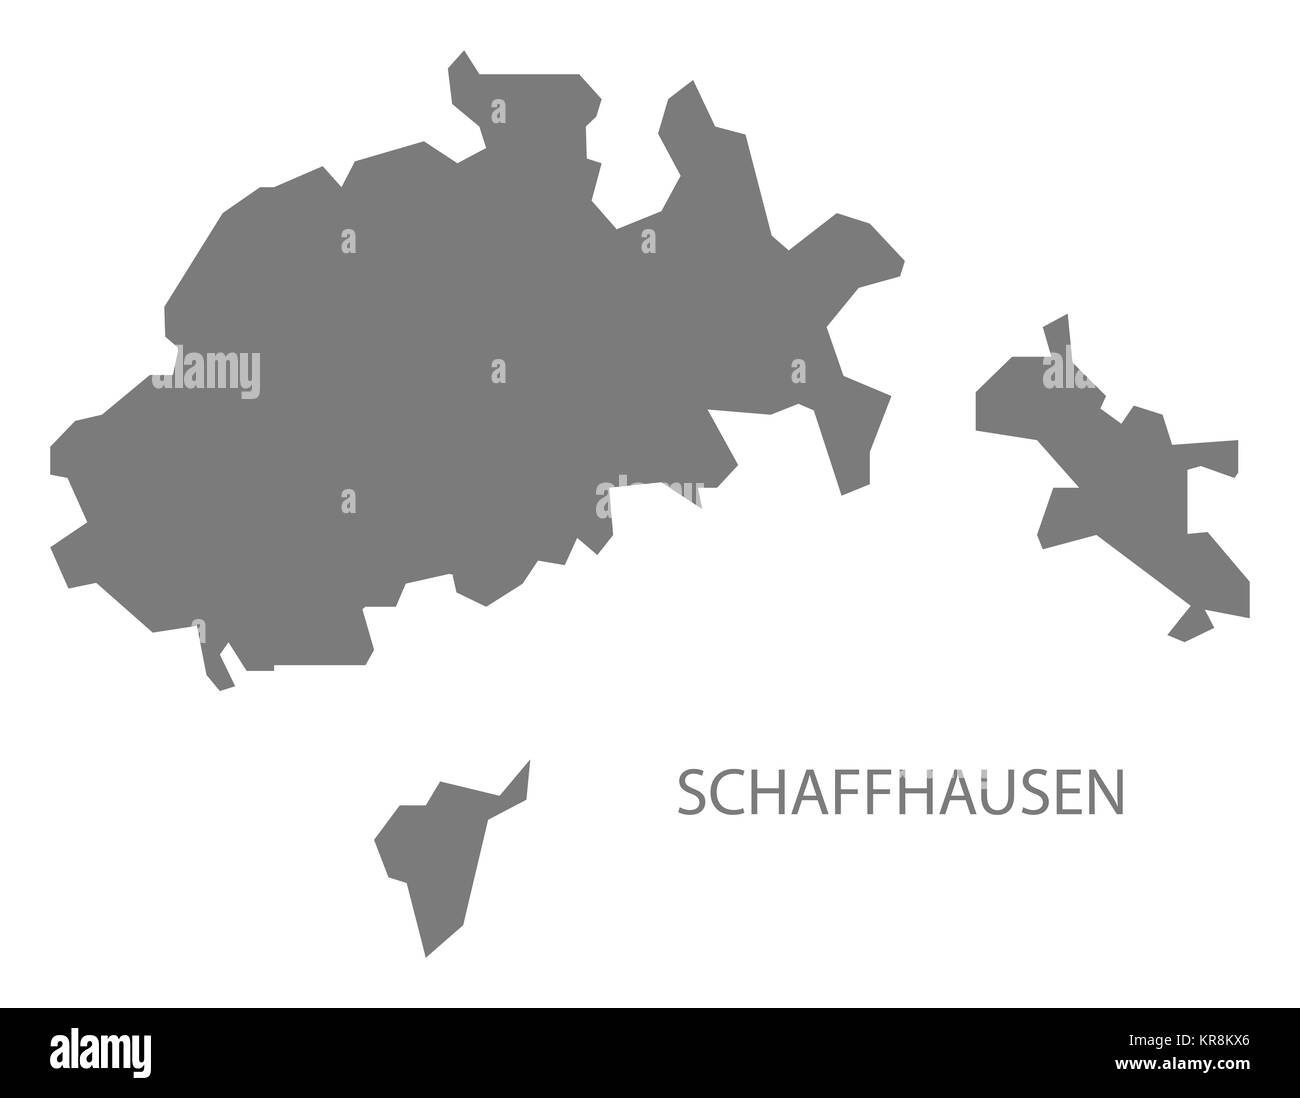 Schaffhausen Switzerland Map grey Stock Photo